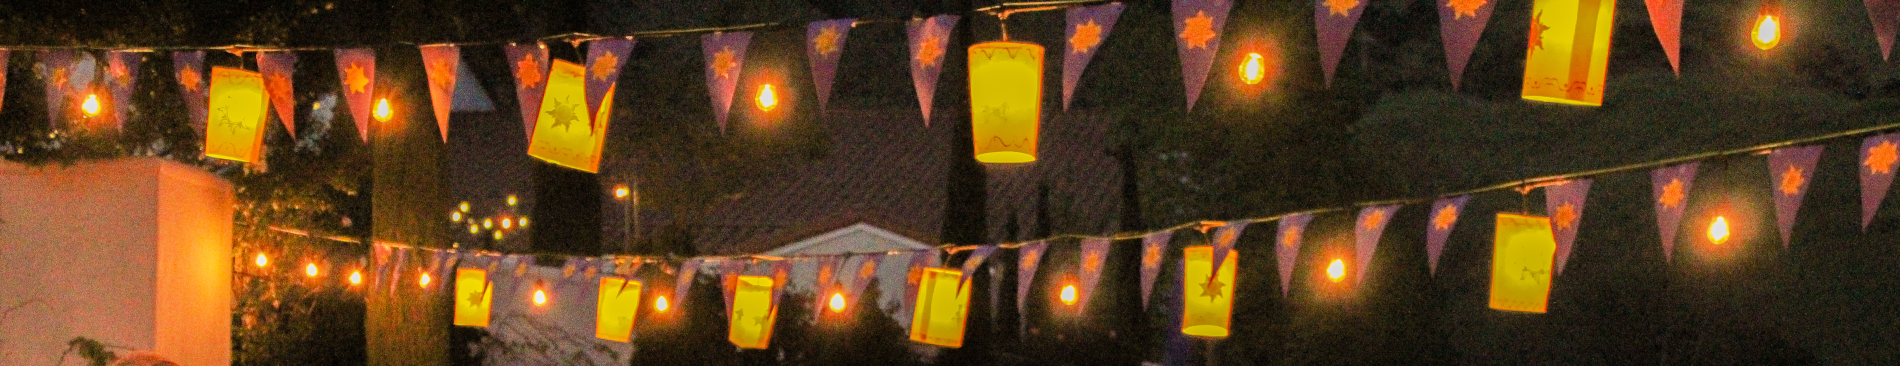 Paper lanterns hanging